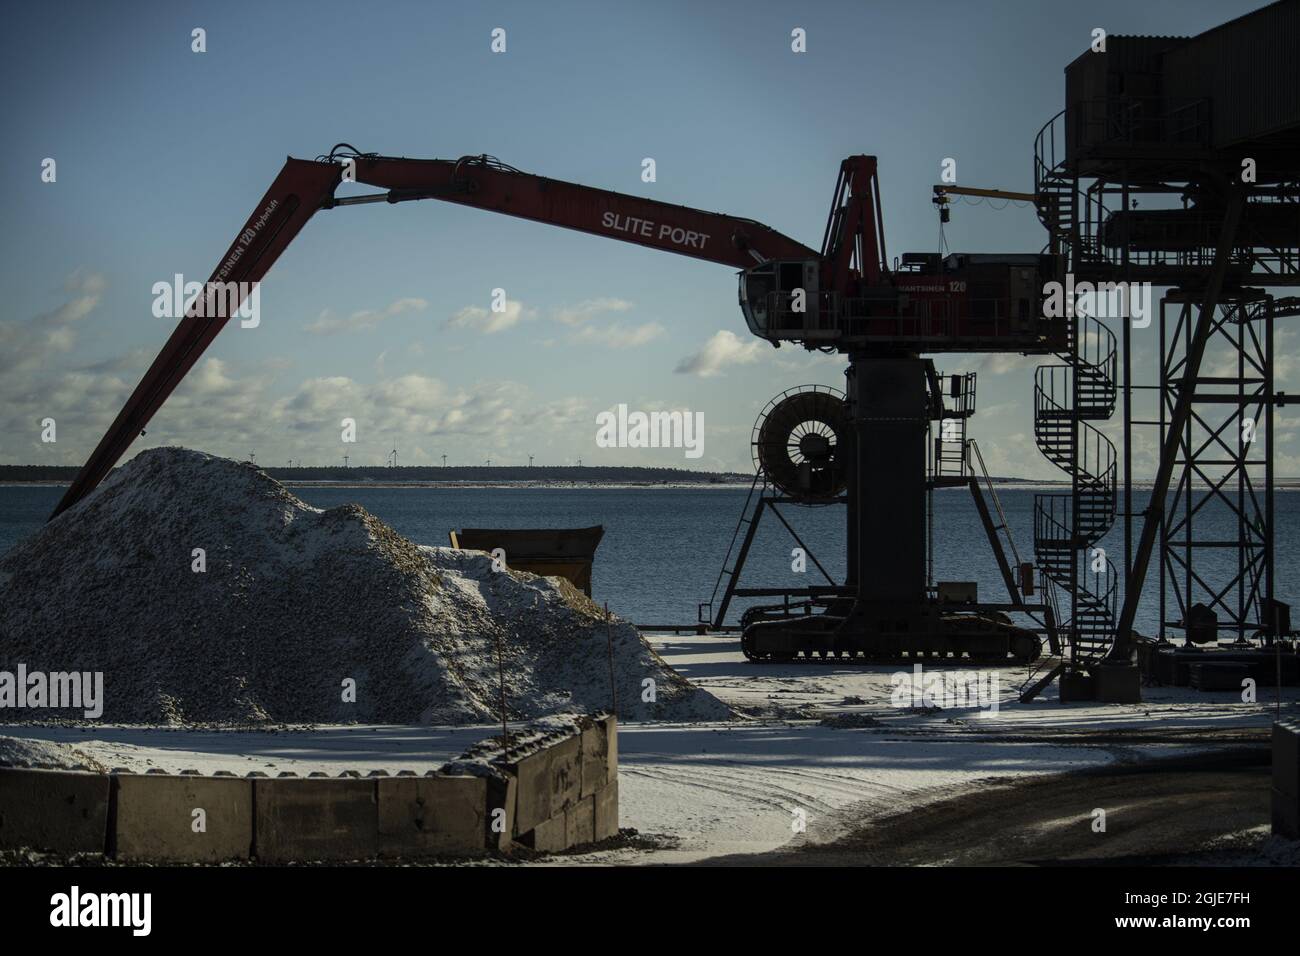 La cimenterie Cementa est le deuxième plus mauvais émetteur de dioxyde de carbone en Suède. L'entreprise veut maintenant devenir la première entreprise au monde à produire du ciment sans fossiles. À SLite sur Gotland, les activistes essaient d'arrêter les plans de Cementa pour une nouvelle grande carrière de calcaire qui, selon eux, sera préjudiciable à l'environnement sur leur île. Photo: Pontus Orre / Aftonbladet / TT Banque D'Images